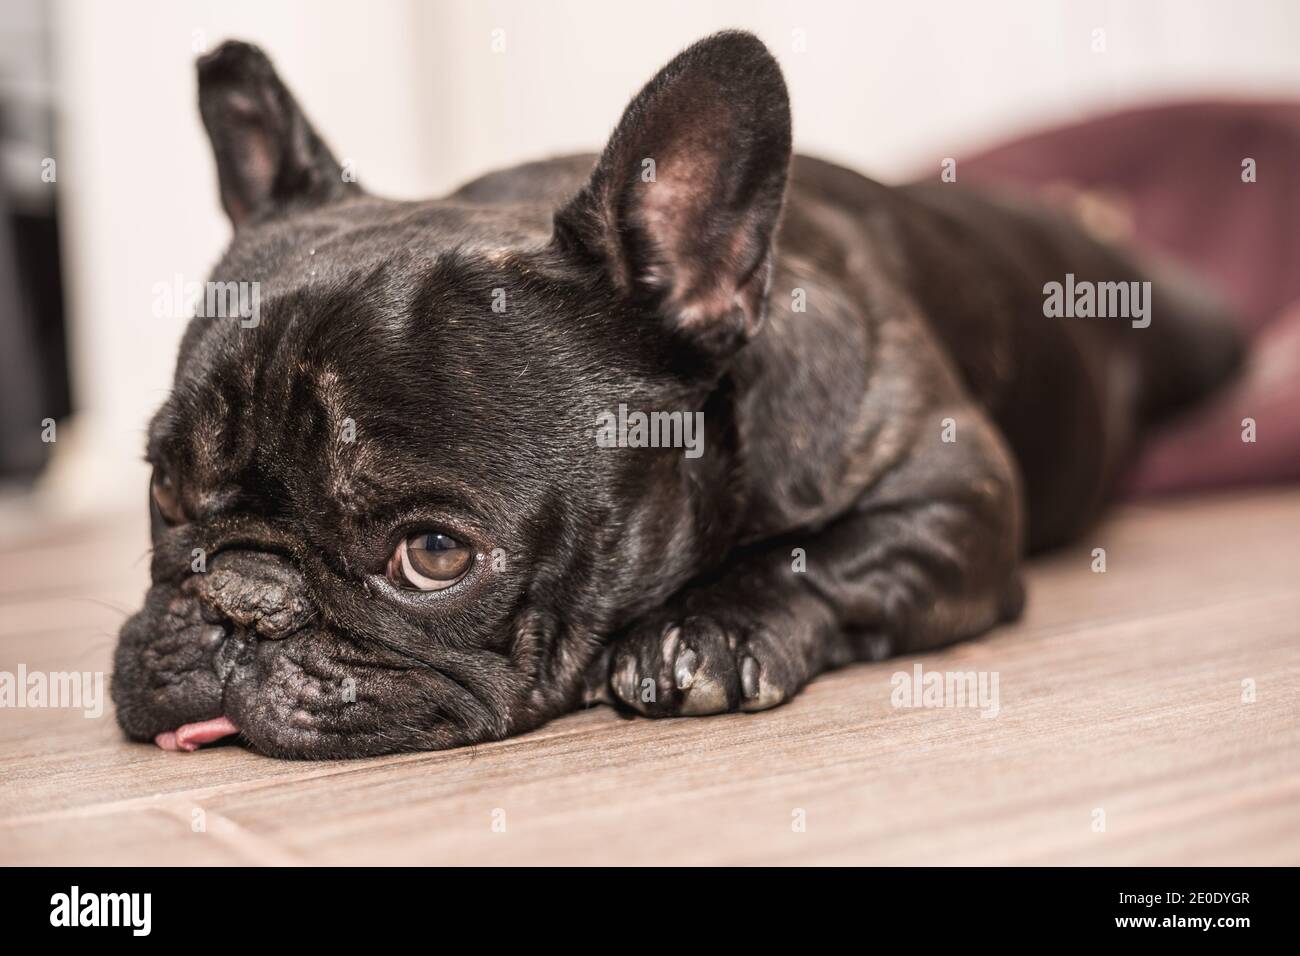 französische Bulldogge im Bett schlafen Stockfotografie - Alamy